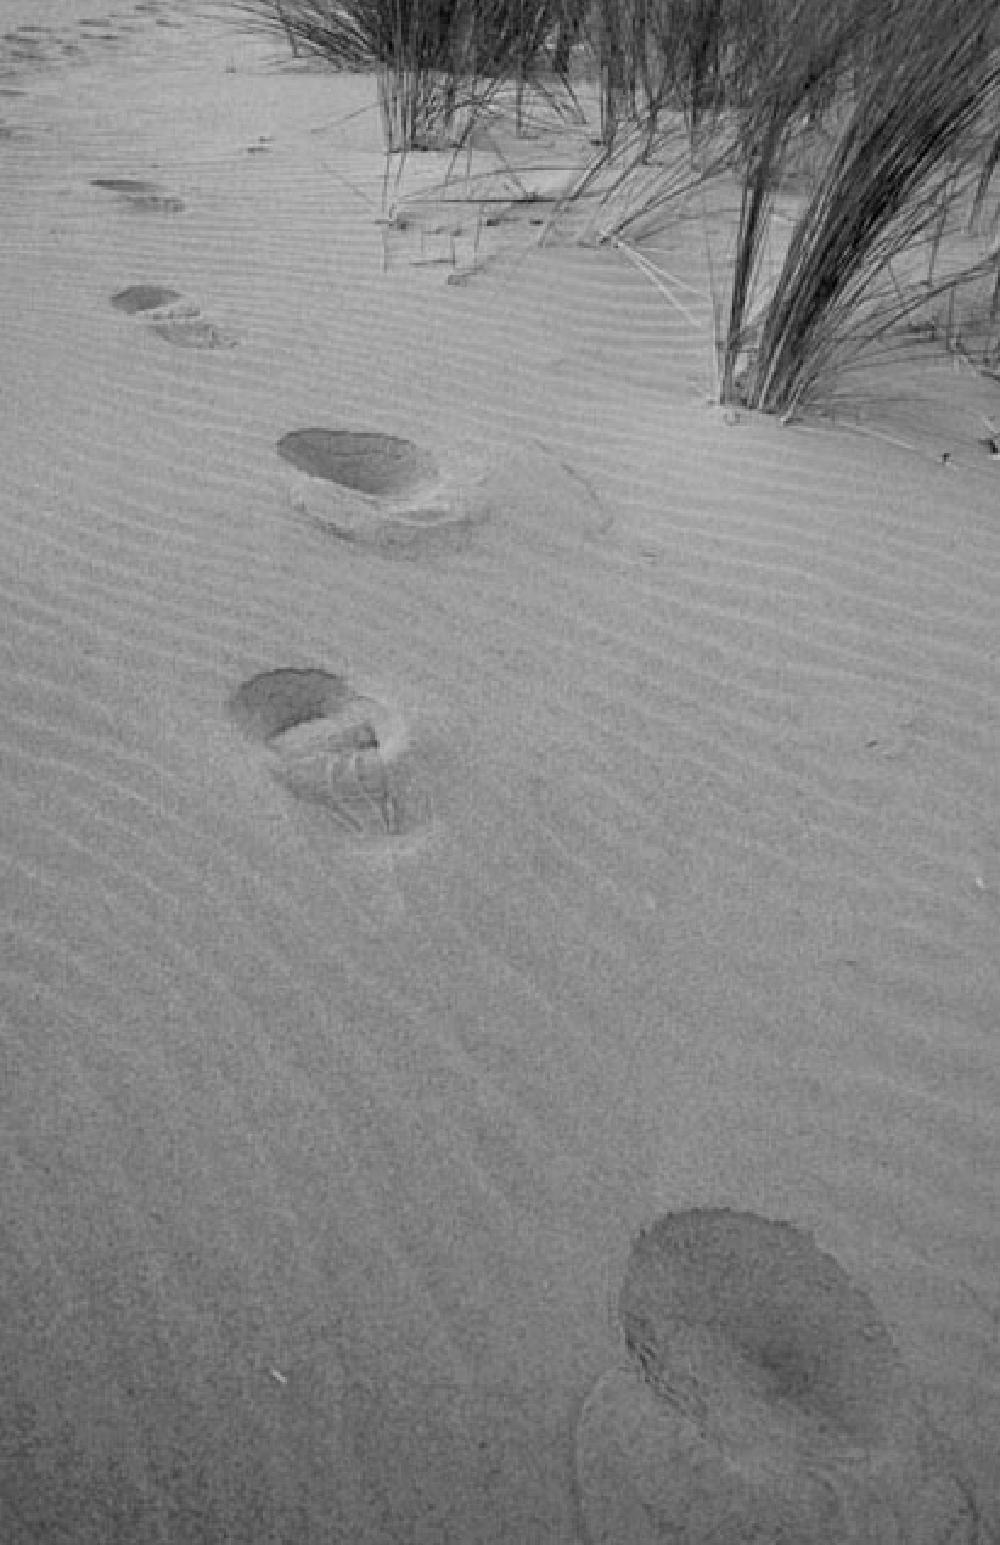 Footprints on a Huelva beech, Spain